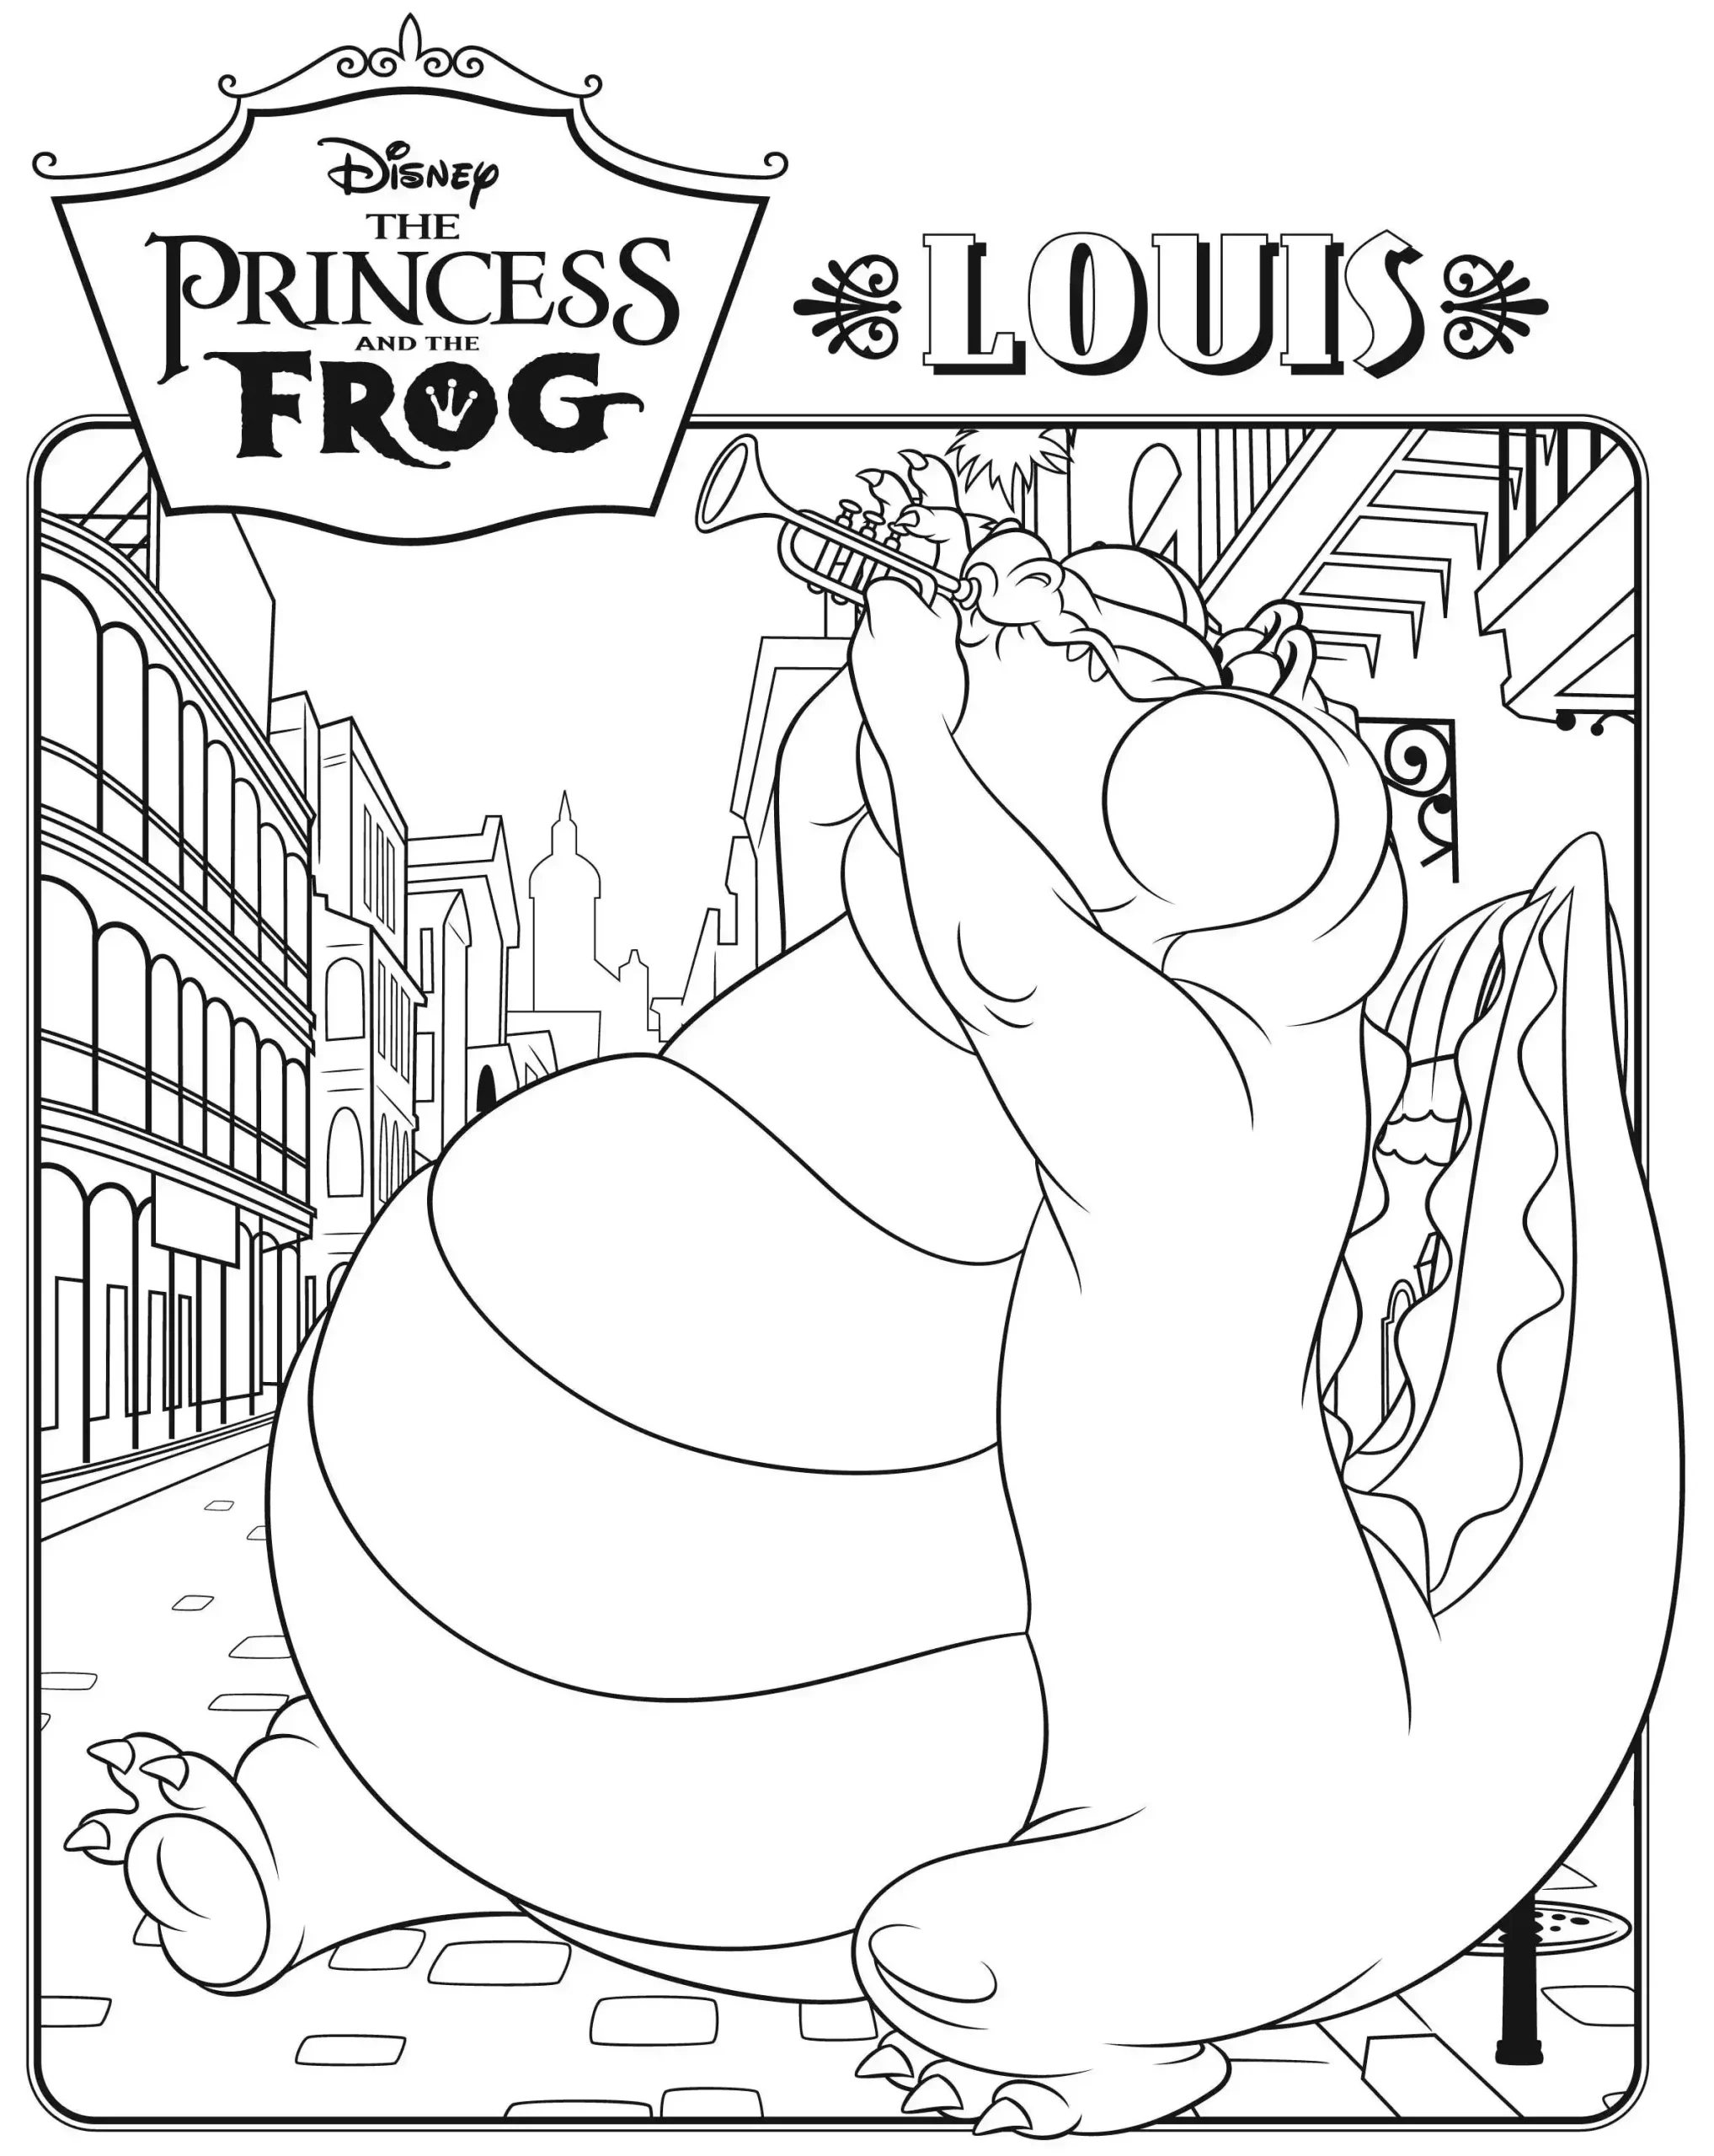 Fichas imprimibles gratis de Luis la princesa y el sapo